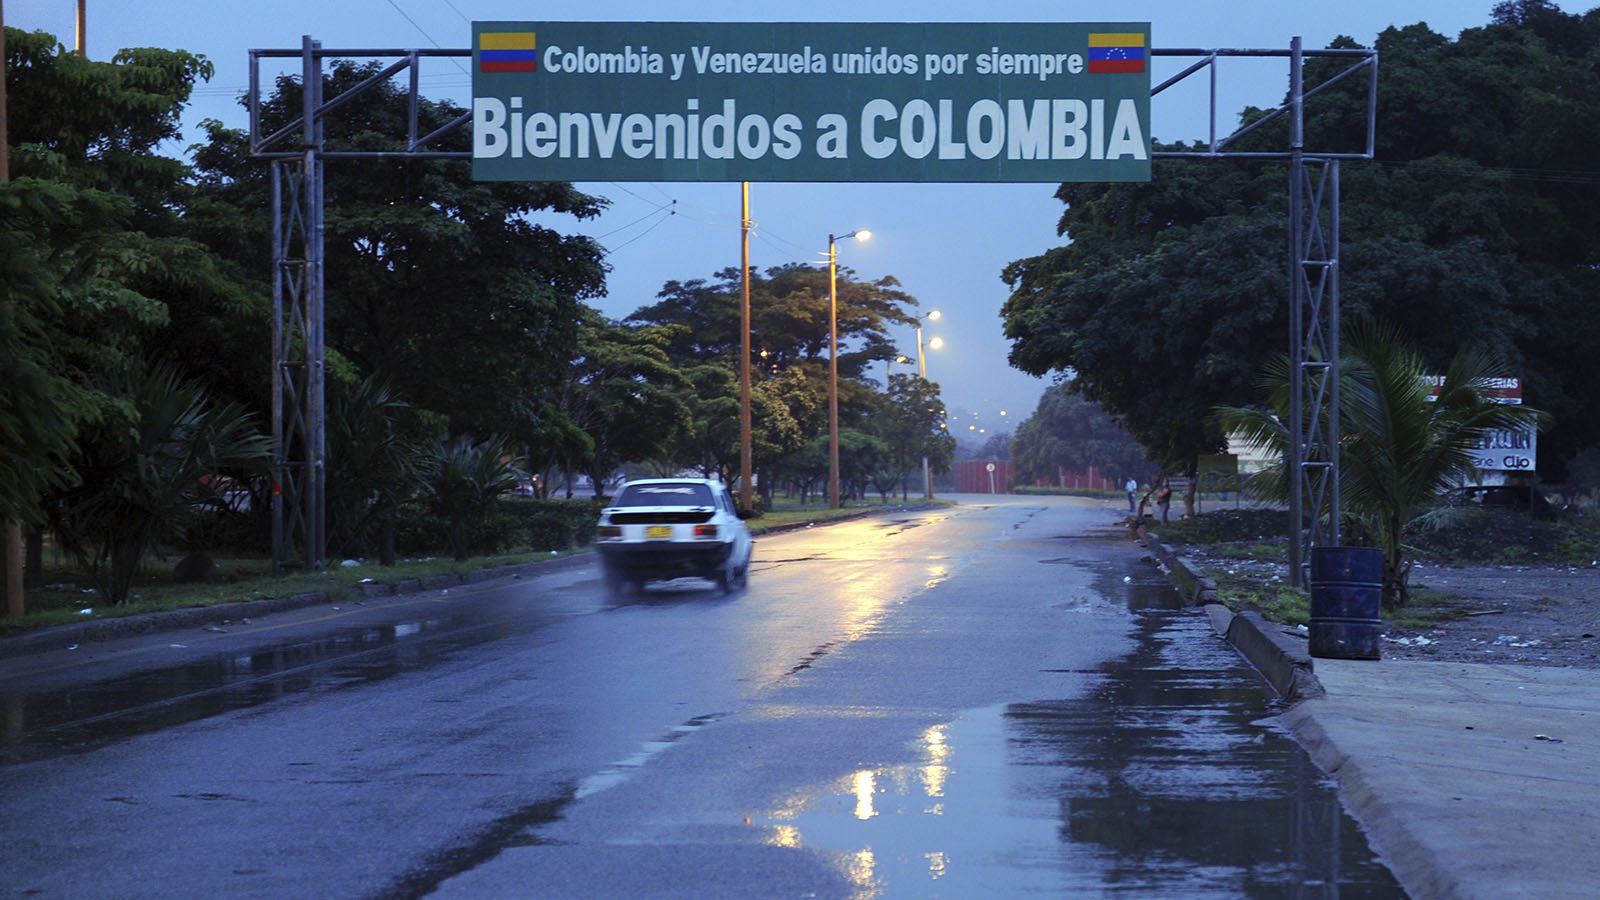 Conindustria proyecta potencial intercambio con Colombia en farmacia calzado y alimentos